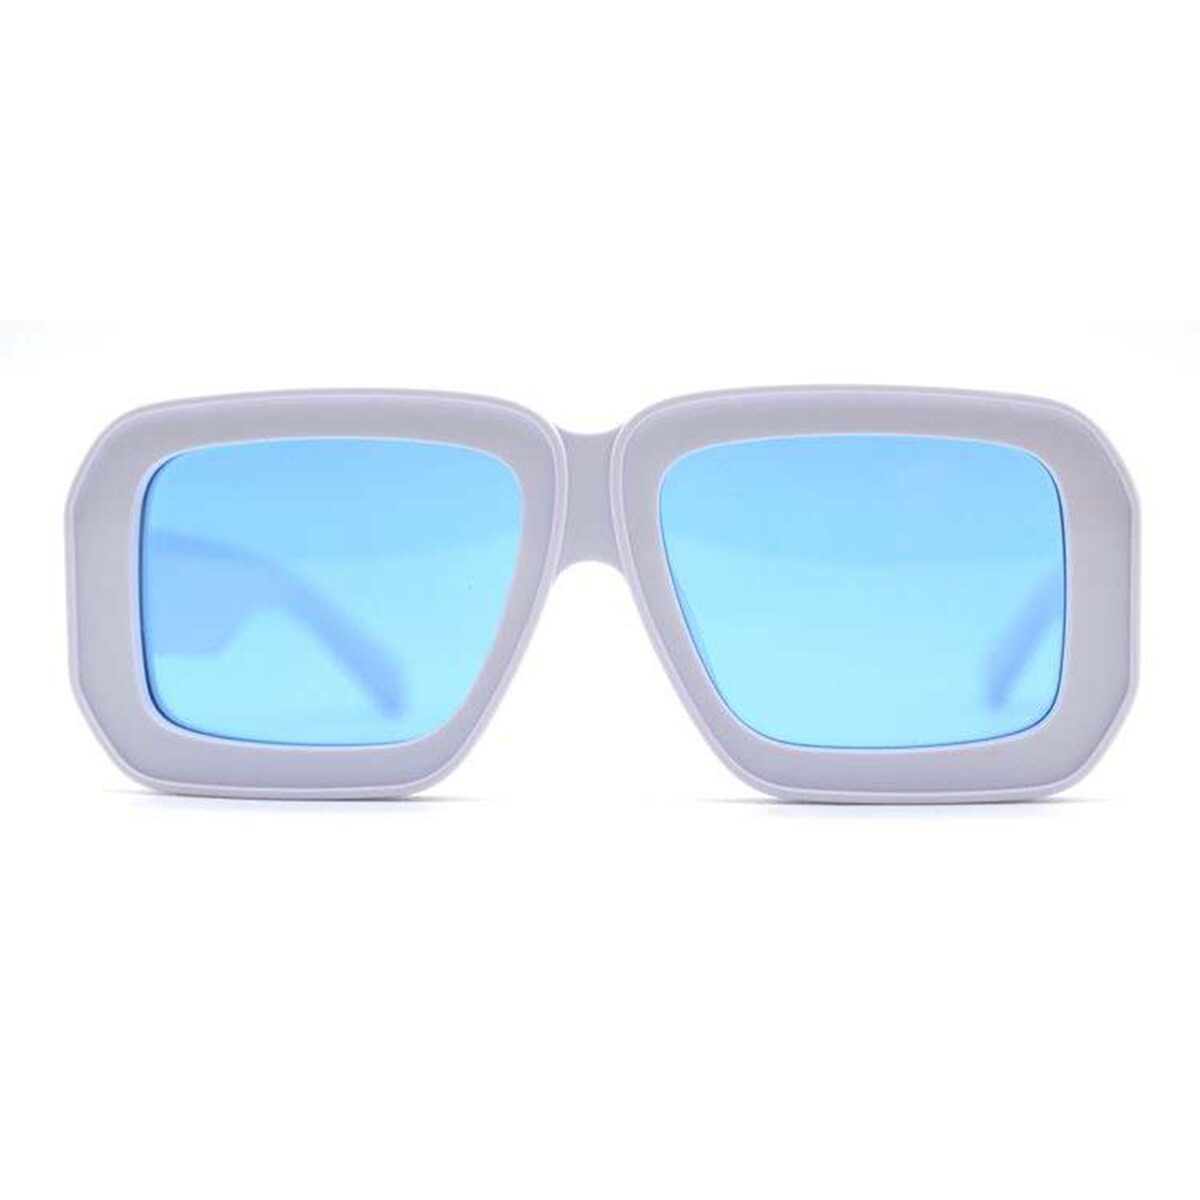 Luxuriöse Oversized-Sonnenbrille, Supreme der Luxusbrillenmarke AKA SAVRAN, ähnlich der Loewe Paula's Ibiza Dive in Mask Sunglasses